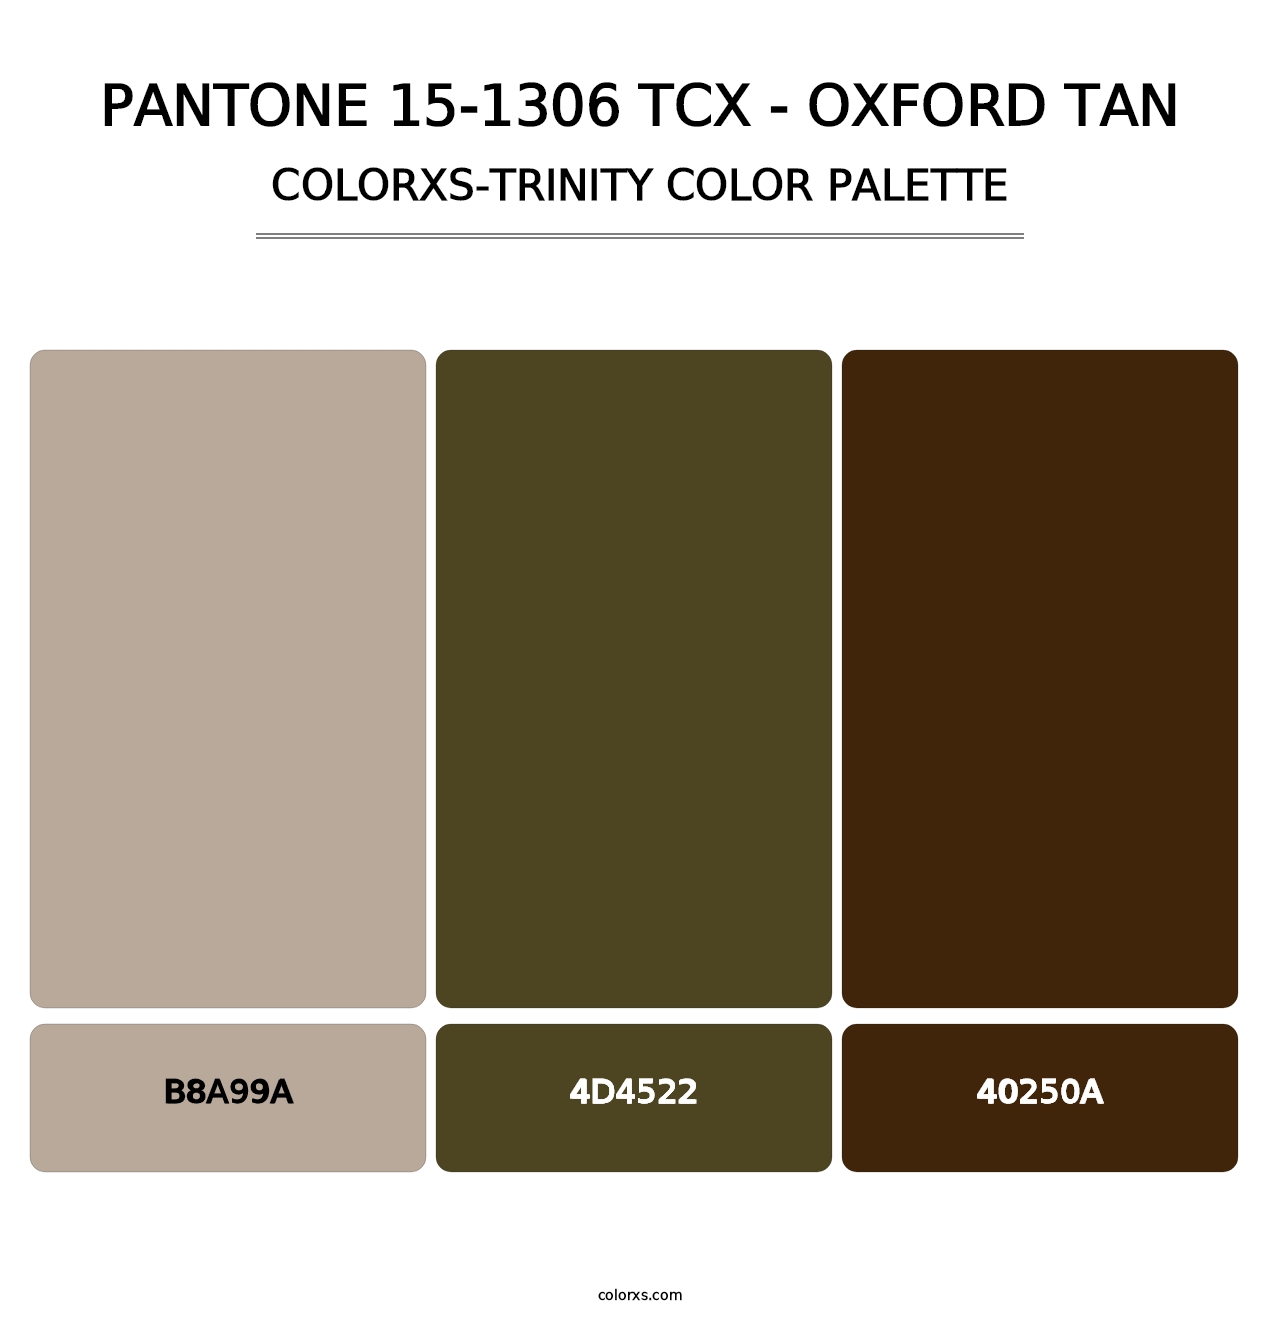 PANTONE 15-1306 TCX - Oxford Tan - Colorxs Trinity Palette